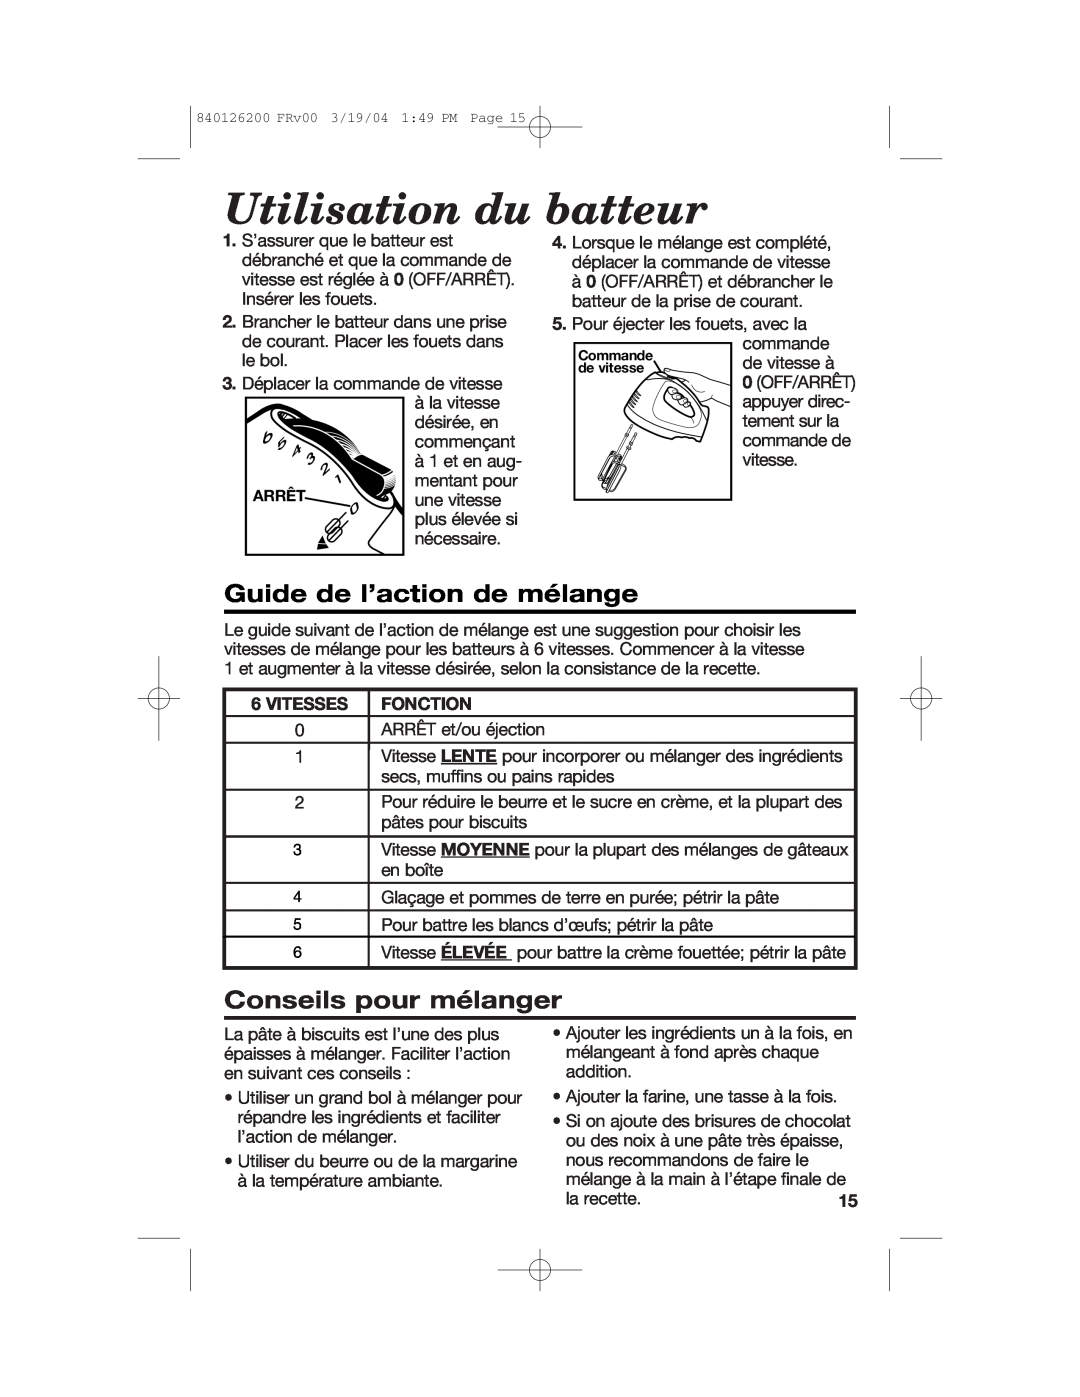 Hamilton Beach 62680C Utilisation du batteur, Guide de l’action de mélange, Conseils pour mélanger, Vitesses Fonction 